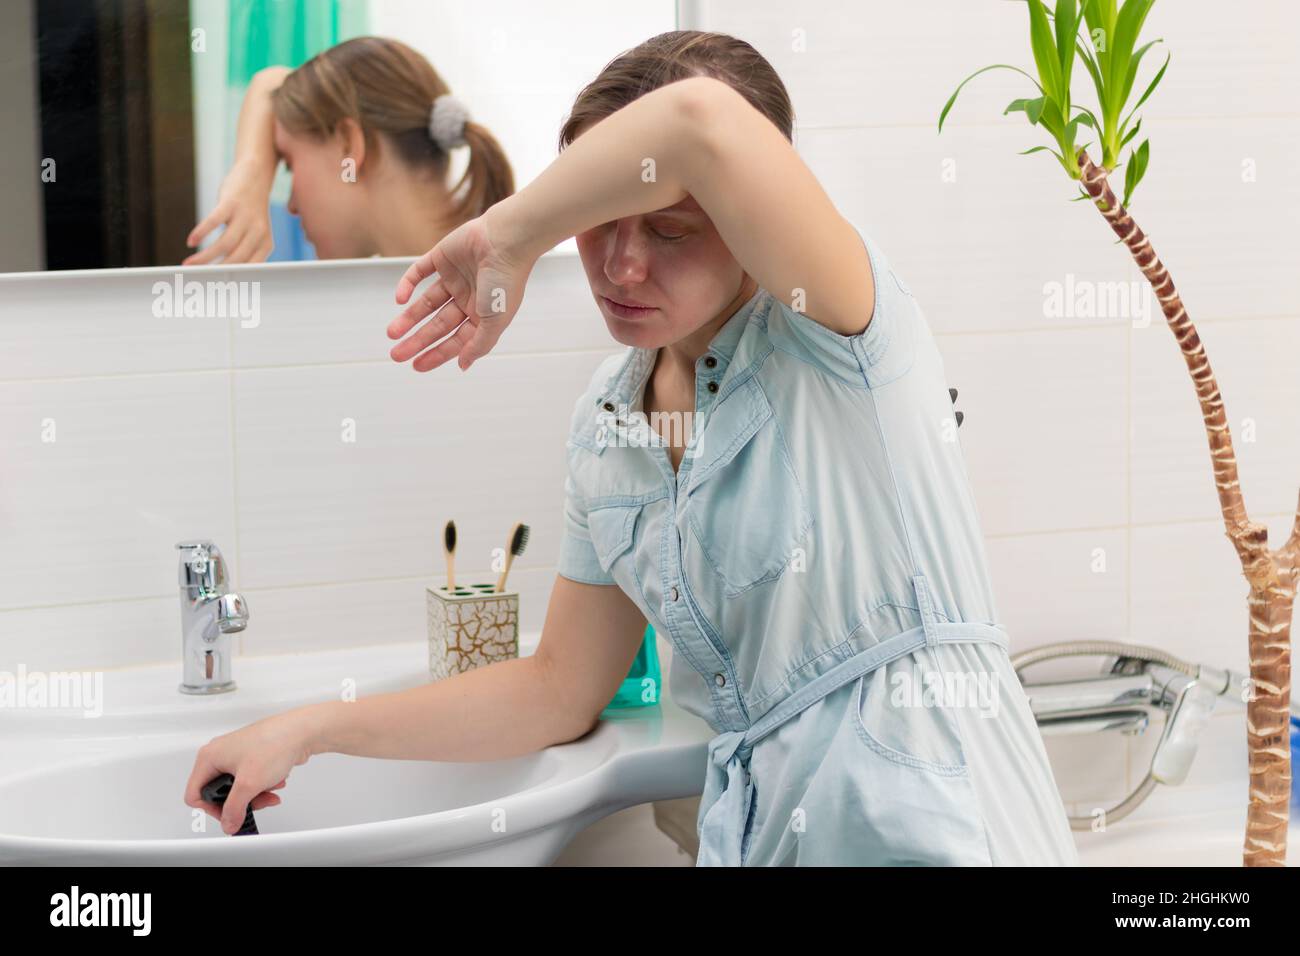 Una giovane donna pulitore in un bagno luminoso con uno stantuffo per eliminare il blocco nelle sue mani. Sul muro c'è uno specchio con un riflesso. Pianta verde. Foto Stock